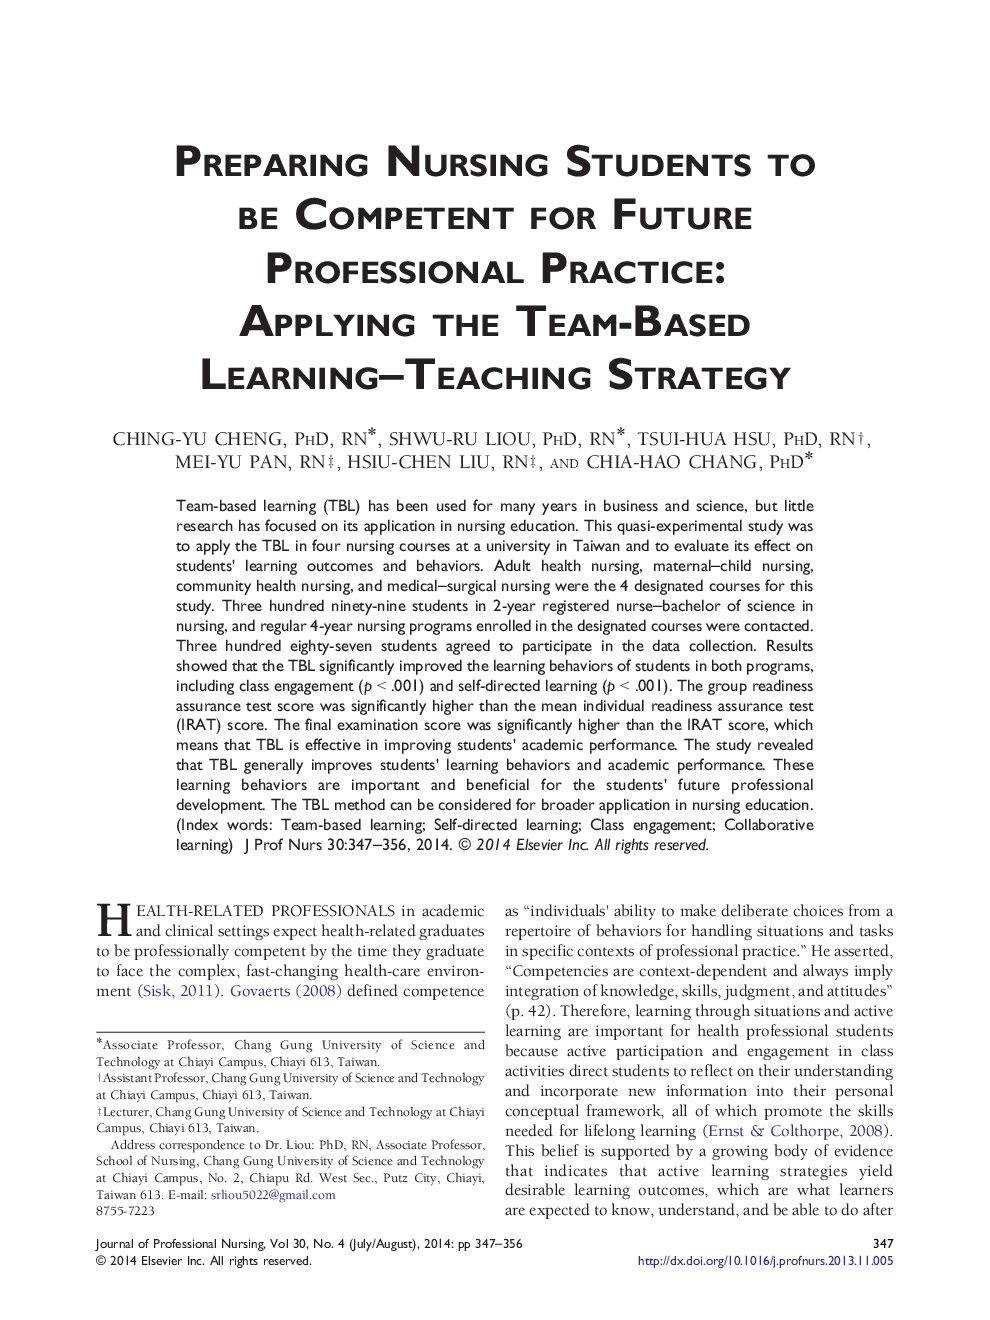 آماده سازی دانشجویان پرستاری برای عمل حرفه ای آینده: اعمال استراتژی آموزش ـ یادگیری مبتنی بر تیم